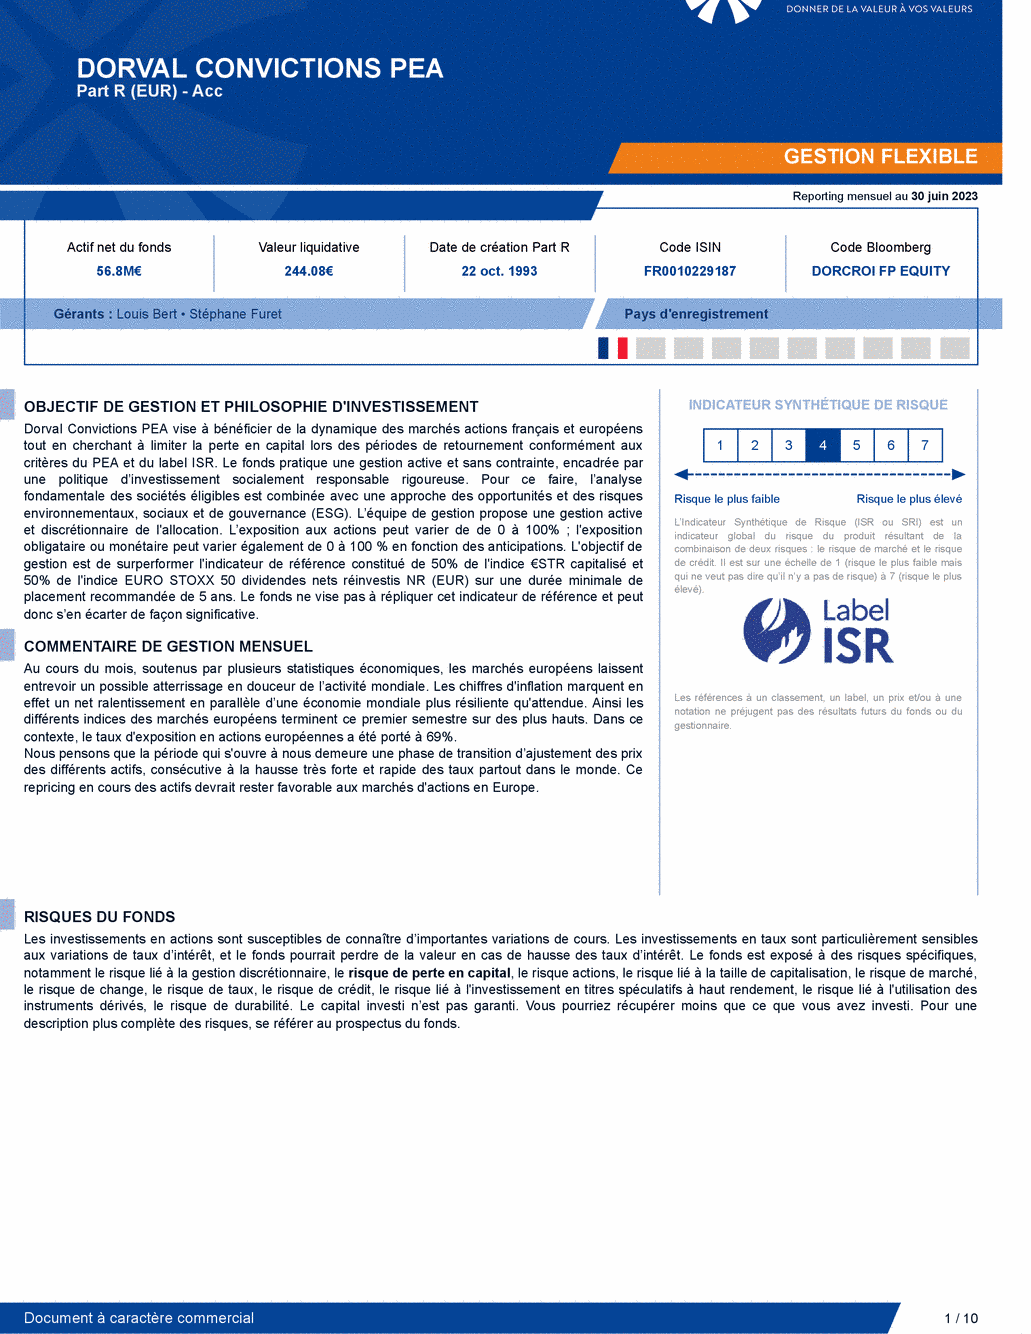 Reporting DORVAL CONVICTIONS PEA - 30/06/2023 - Français